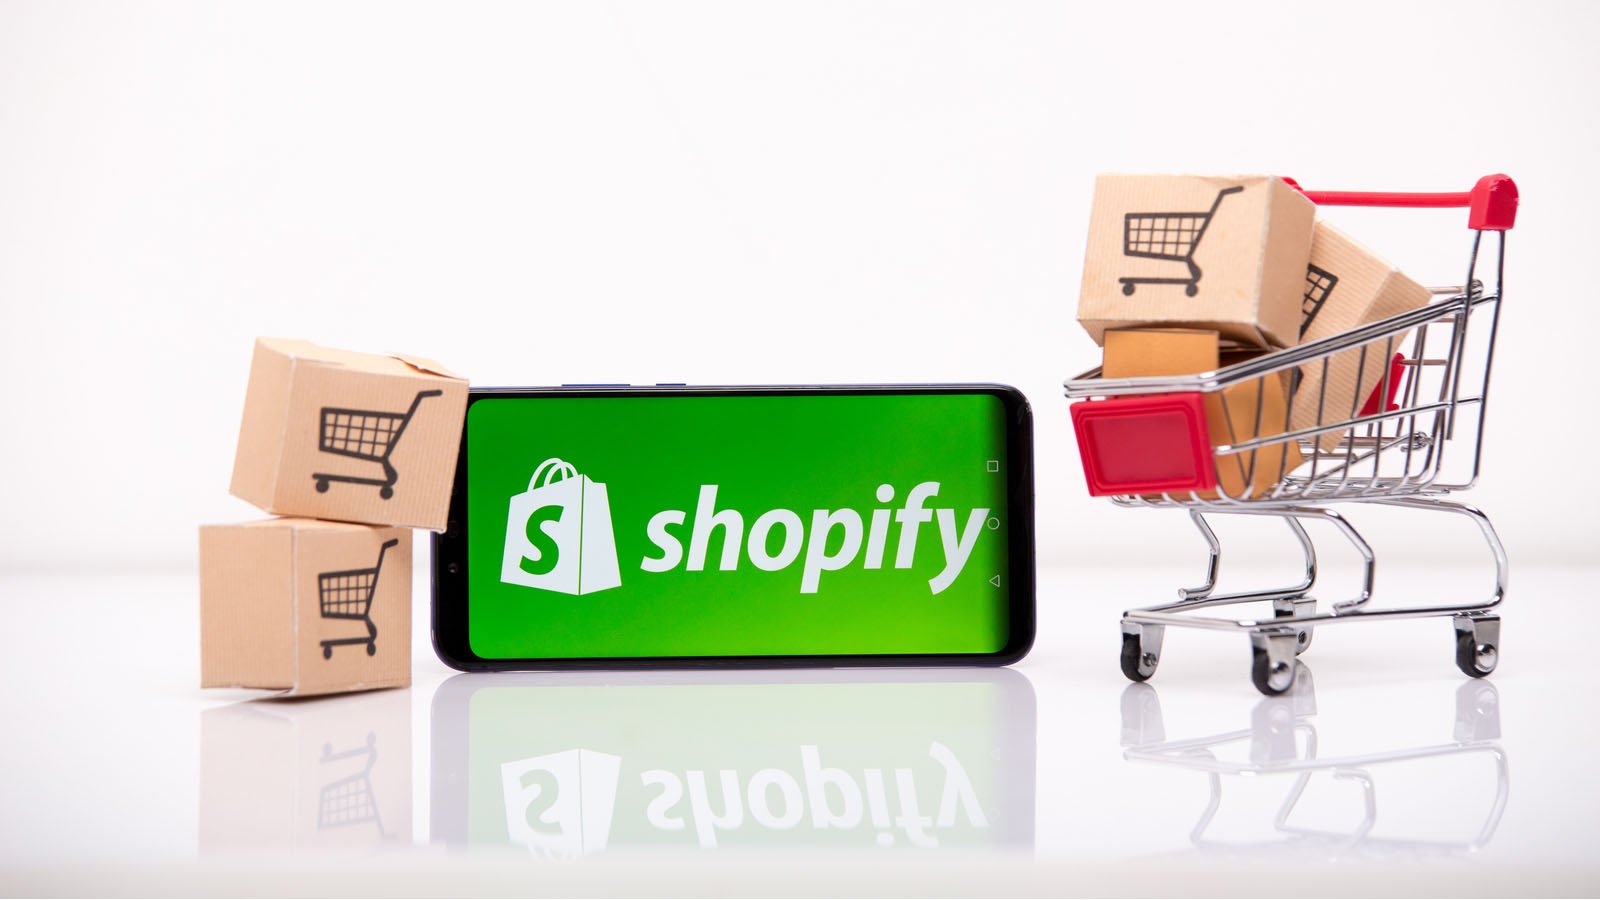 Mercado de valores: lo que los inversores de Shopify están diciendo hoy a medida que las acciones pasan al ‘modo bestia’